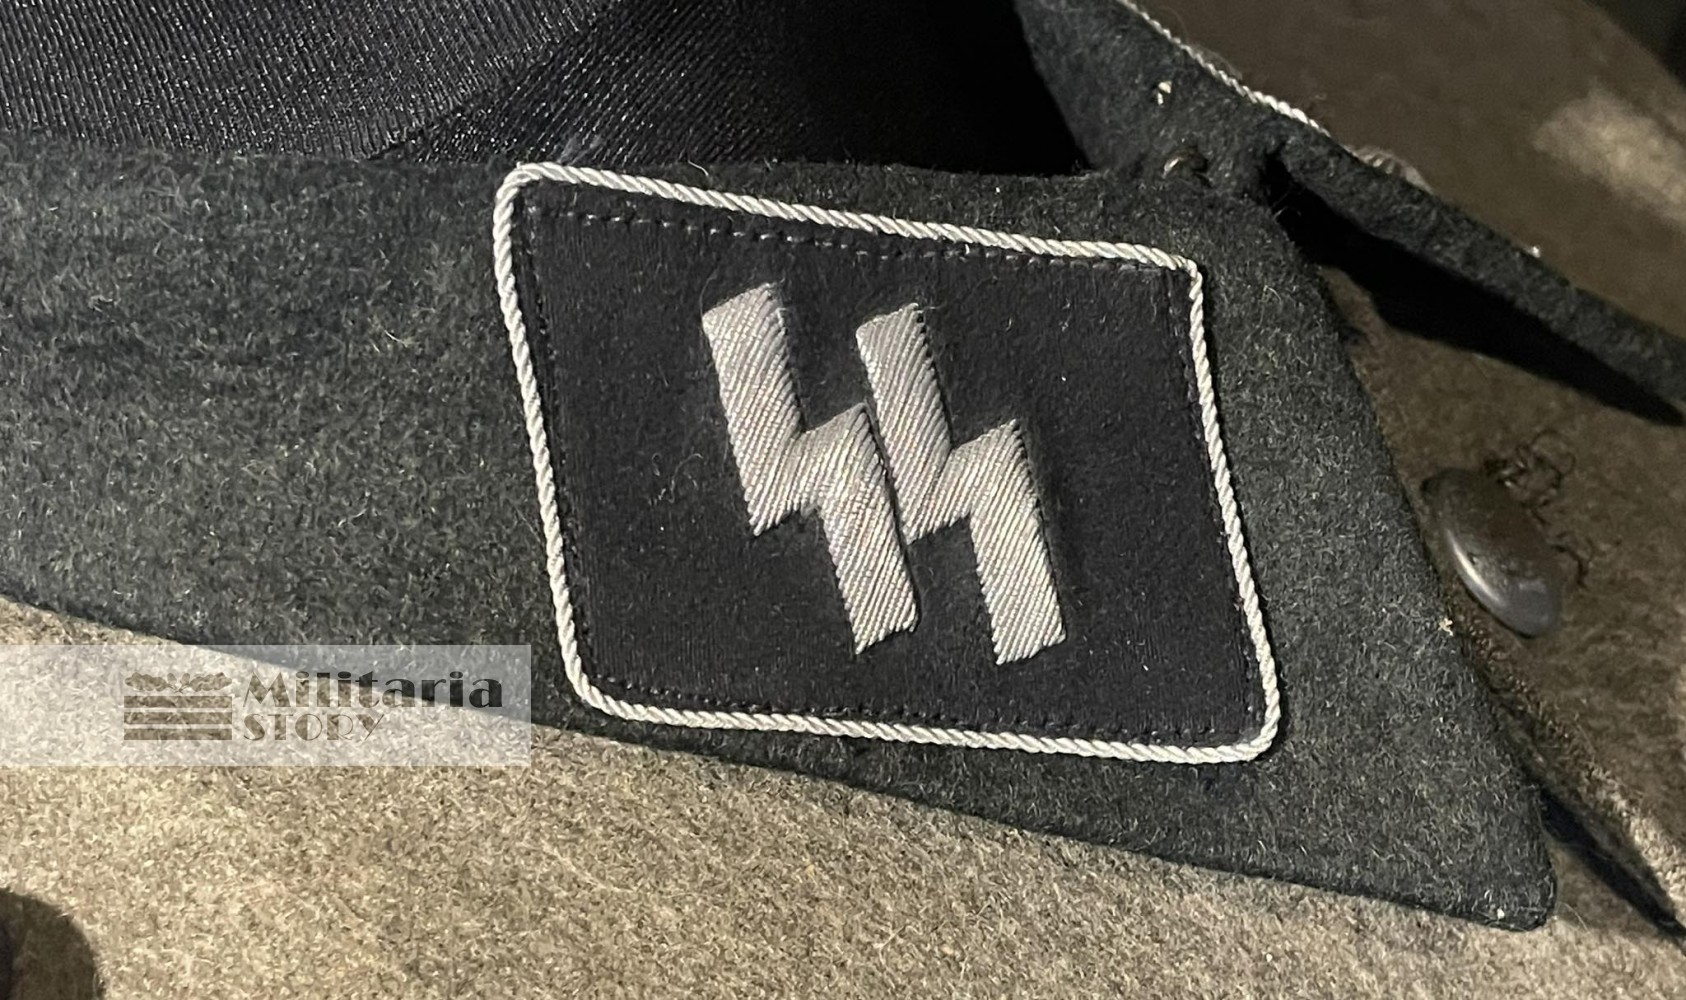 Waffen SS Officer  Tunic - Waffen SS Officer  Tunic: Third Reich Uniforms